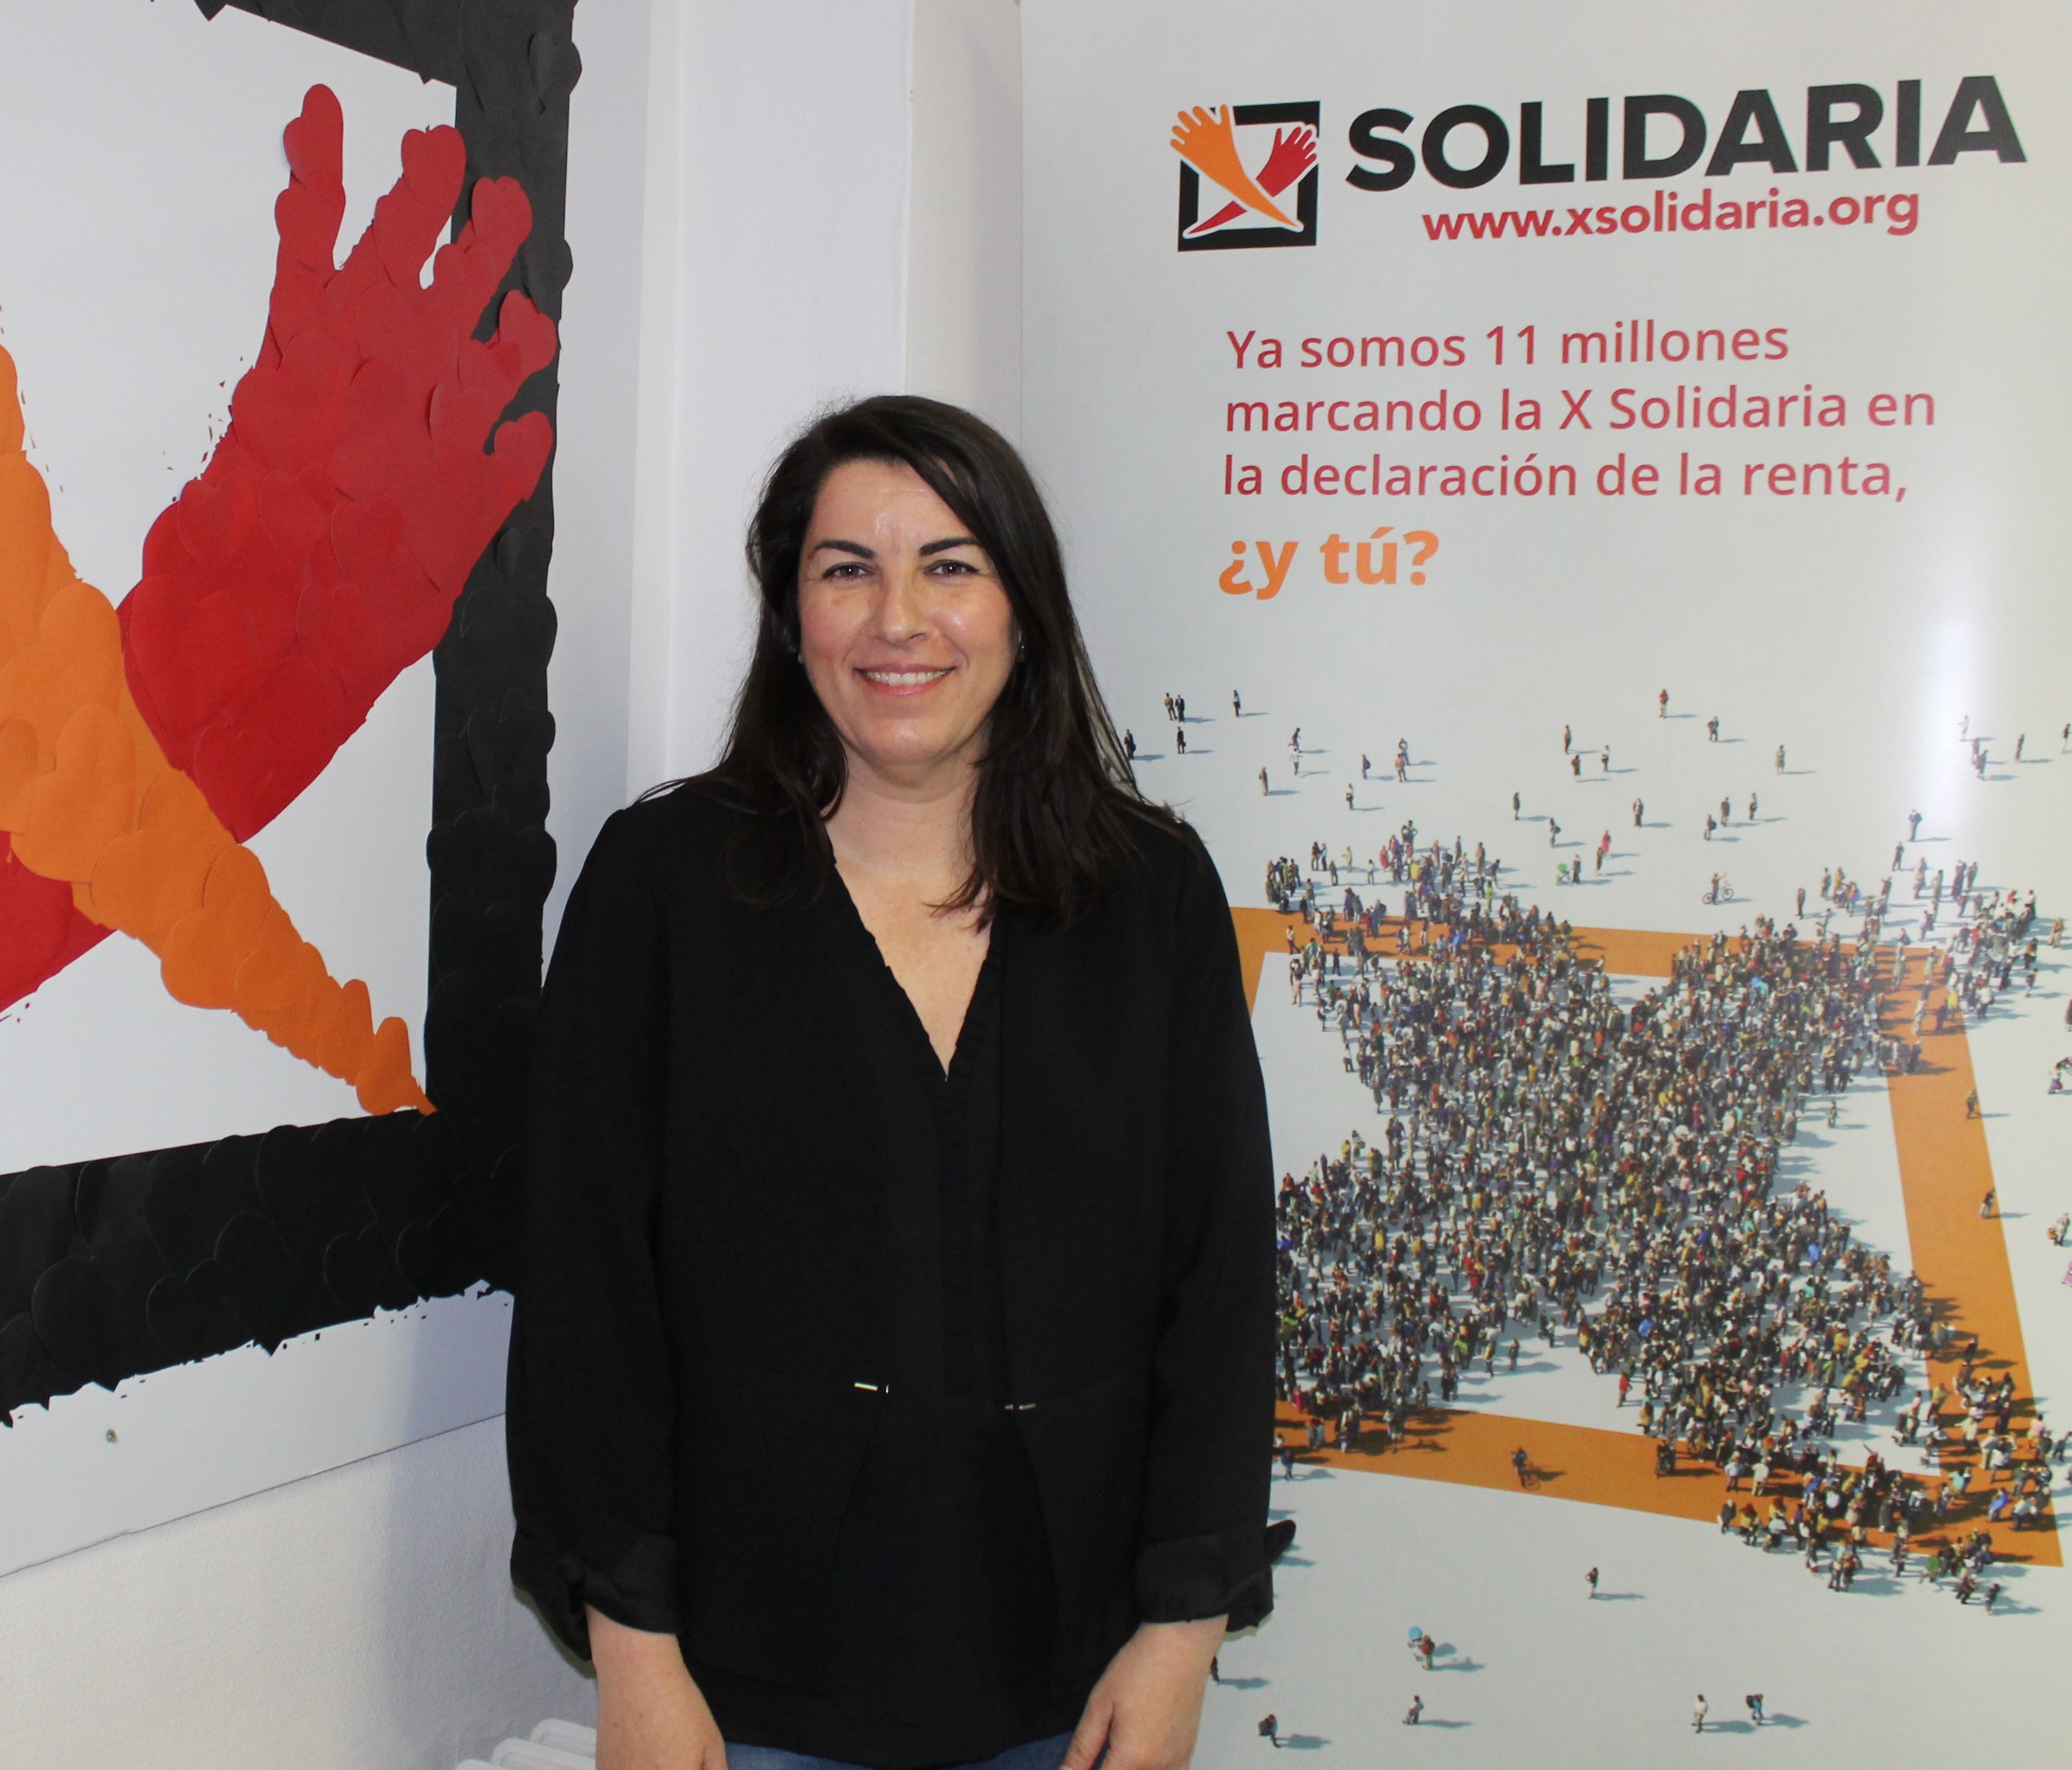 Entrevistamos a Asunción Montero, Presidenta de la Plataforma de ONG de Acción Social, entidad que coordina la campaña “X Solidaria” dirigida a las personas contribuyentes para que marquen la casilla 106 de Actividades de Interés Social en su declaración anual de la Renta